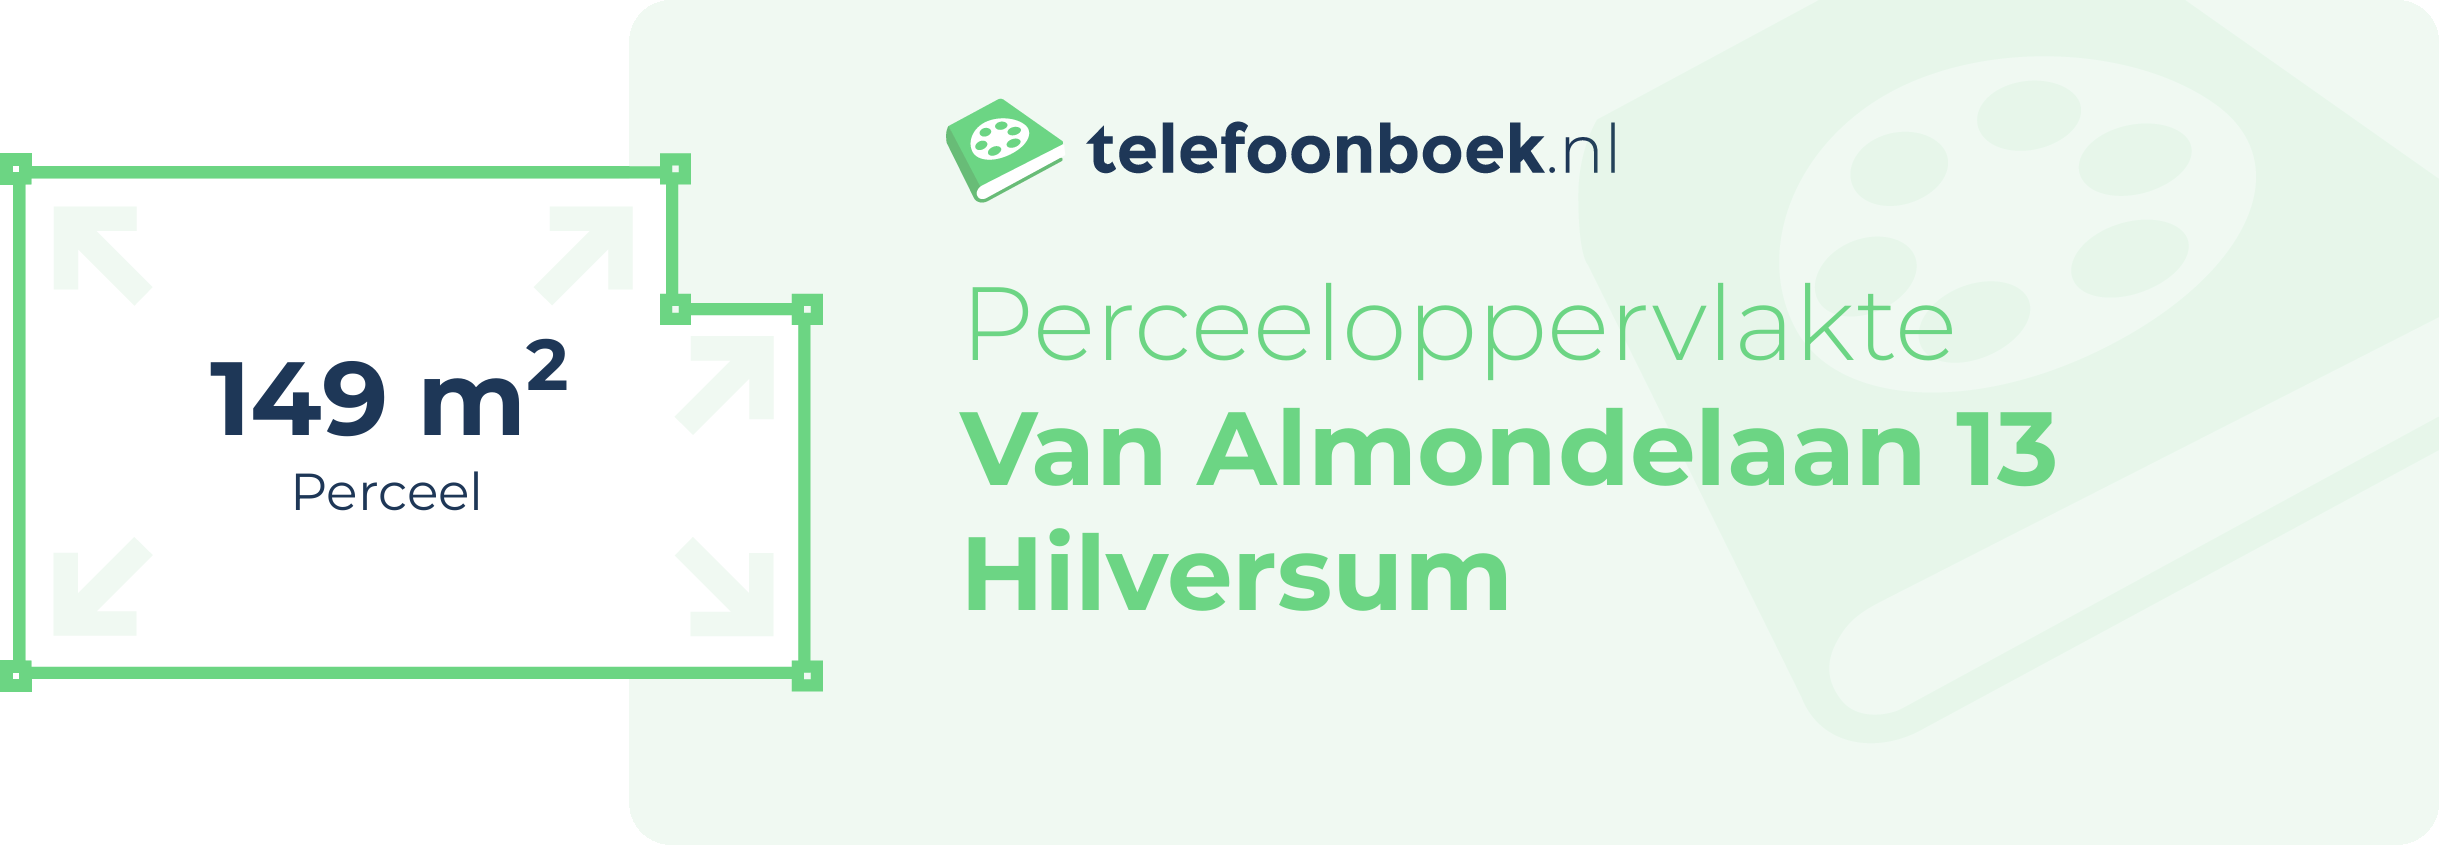 Perceeloppervlakte Van Almondelaan 13 Hilversum